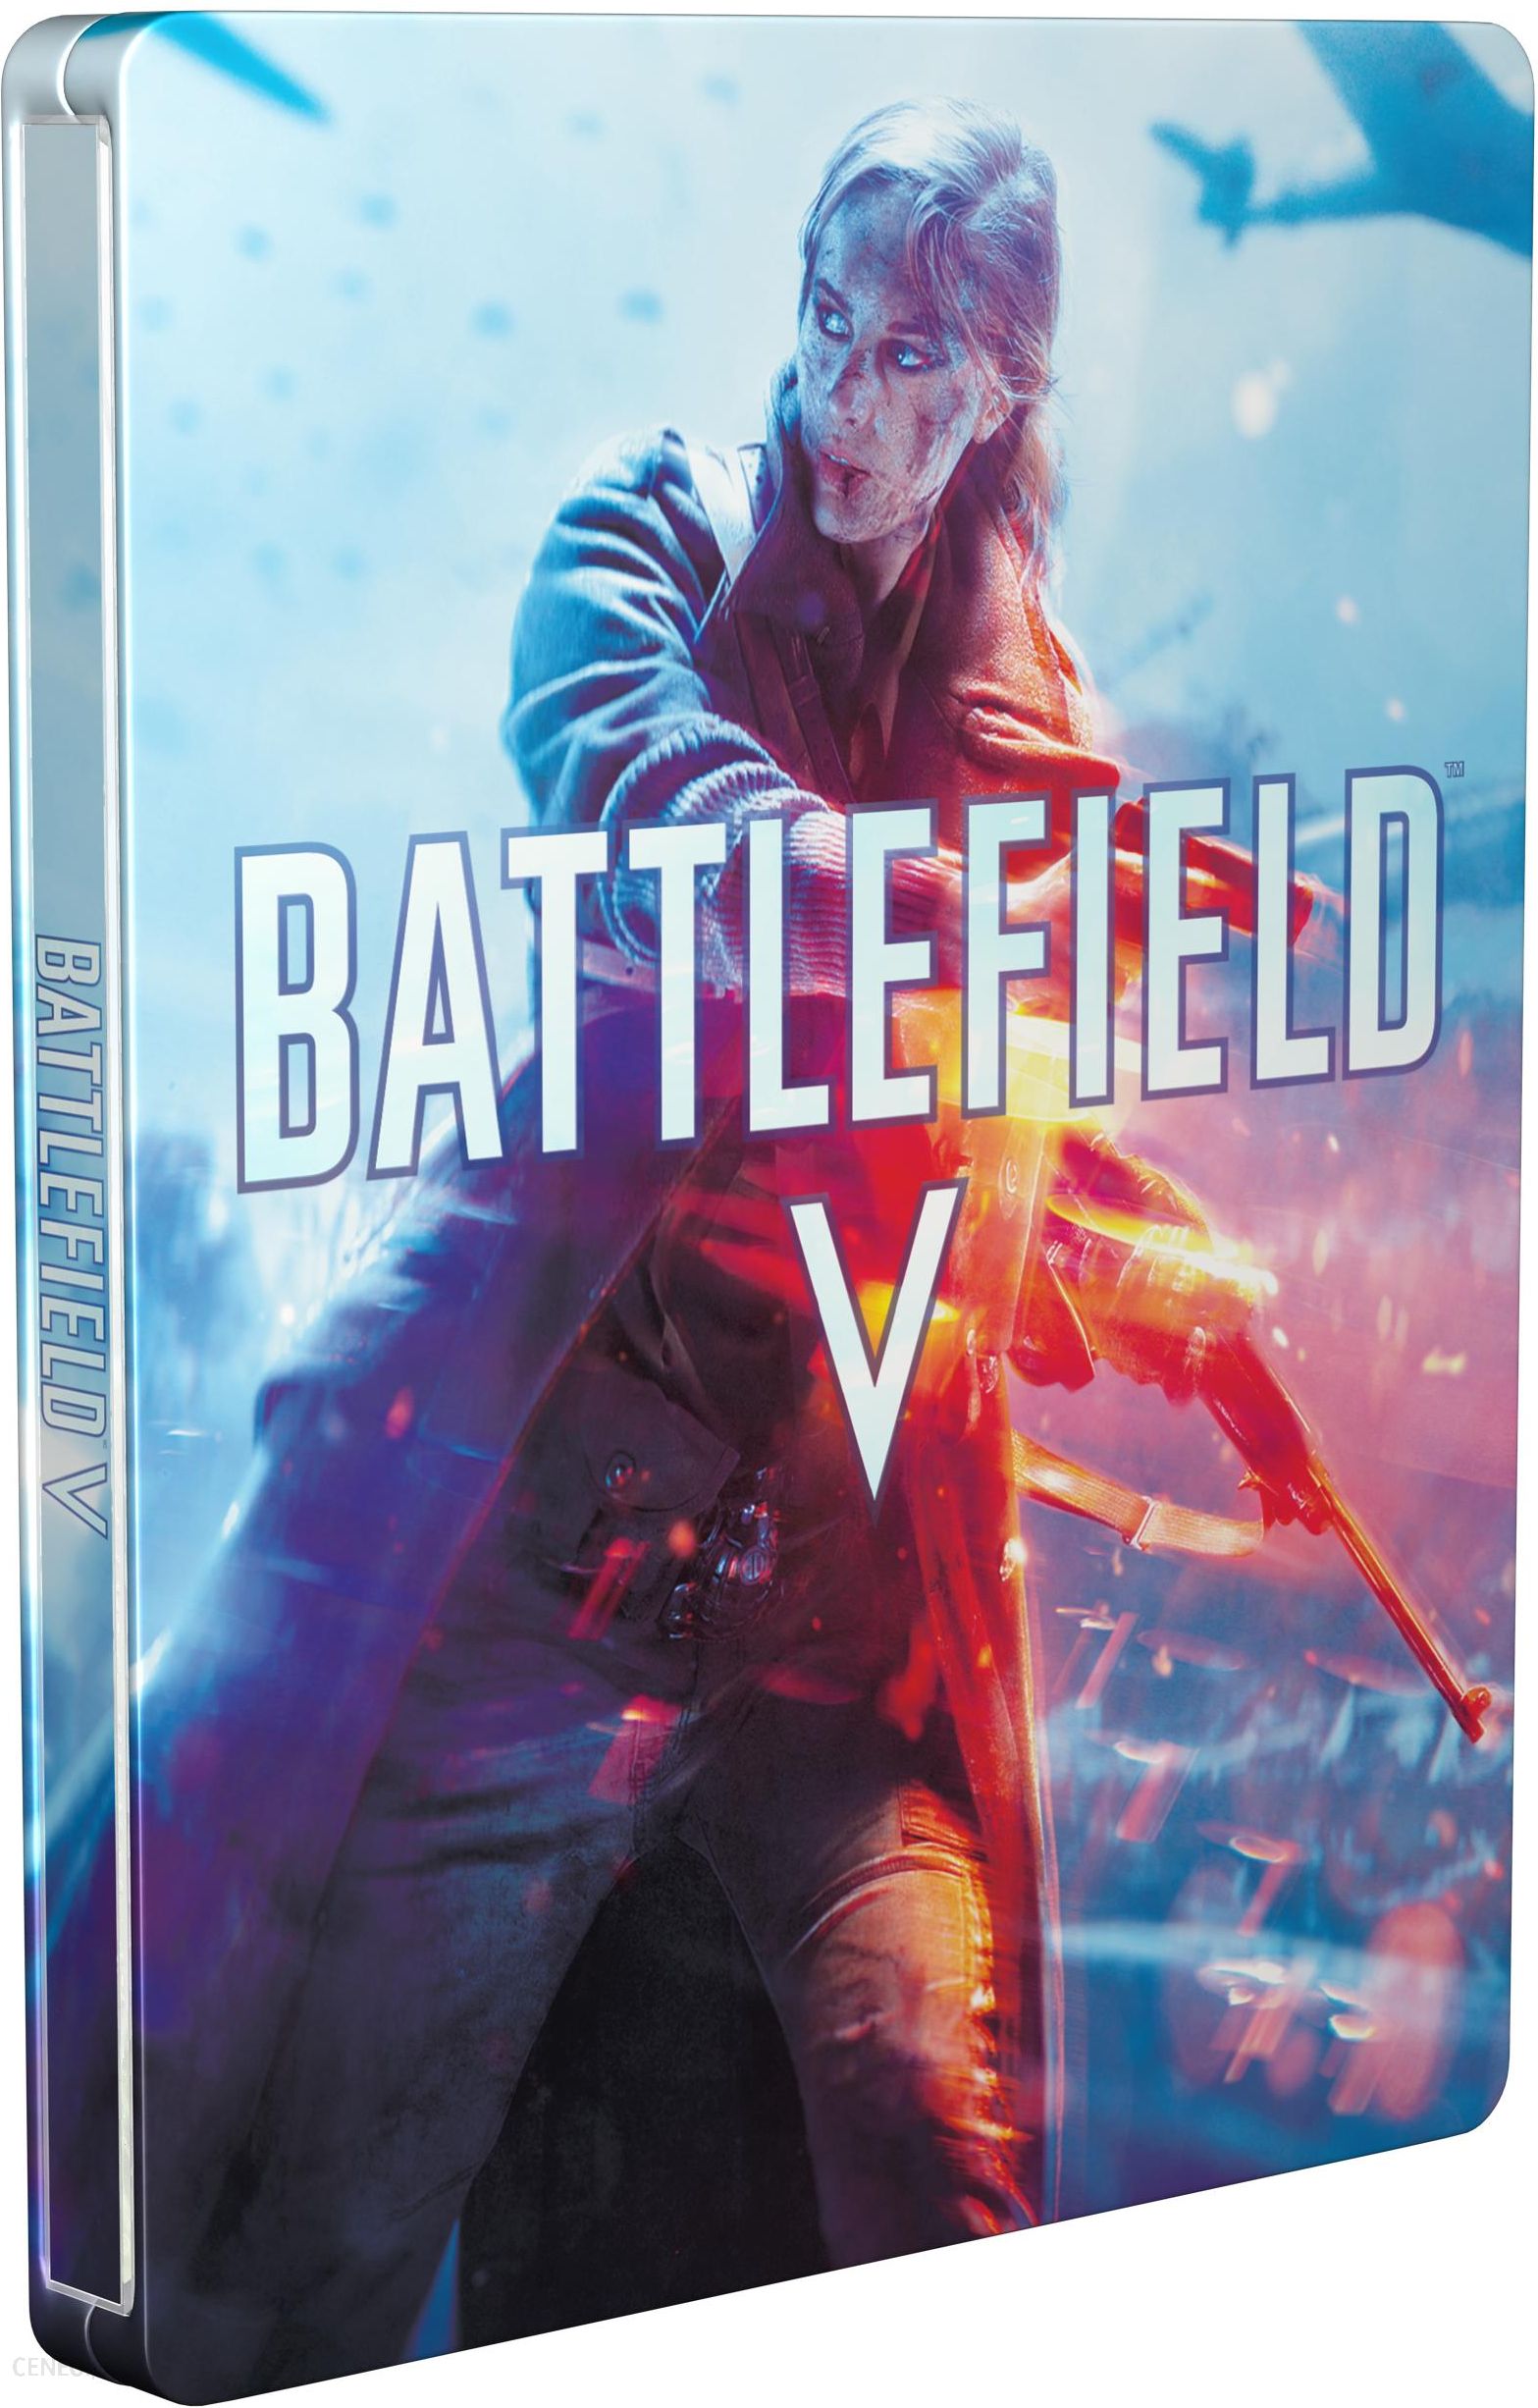 Игры ea на ps5. Battlefield v Limited Steelbook Edition ps4. Battlefield 5 Steelbook ps4. Бателфилд 5 диск на пс4. Бателфилд 5 стилбук диск на ПС 4.